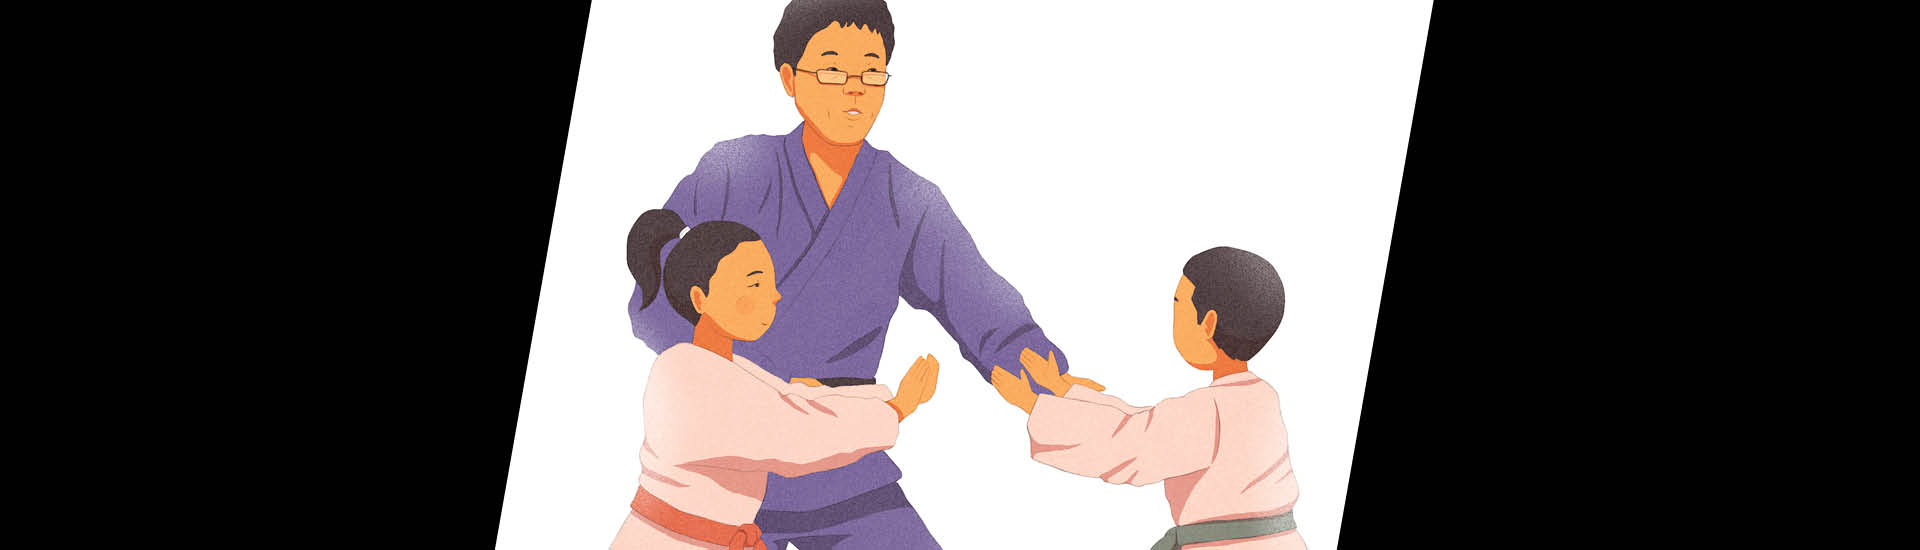 Ilustração do judoca Futoshi Urata, com duas crianças, vestidos de kimono da prática da arte marcial.